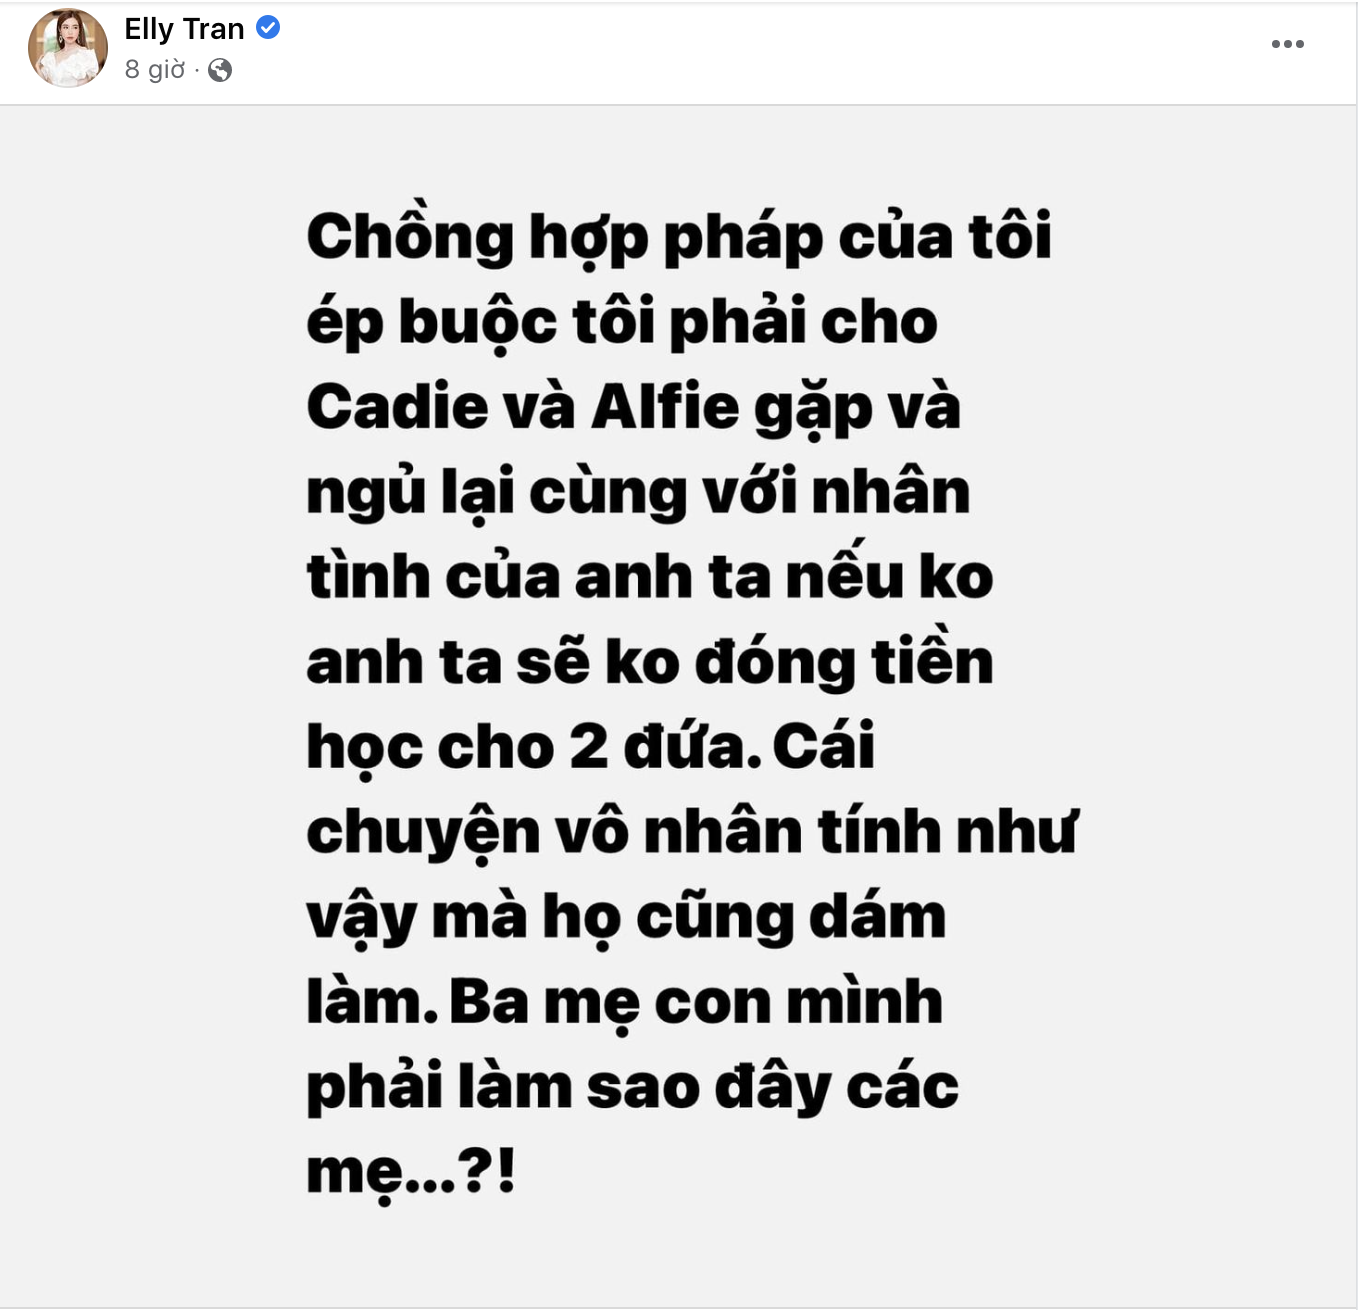 Bài phốt của Elly Trần đã biến mất cùng với hai tài khoản Facebook